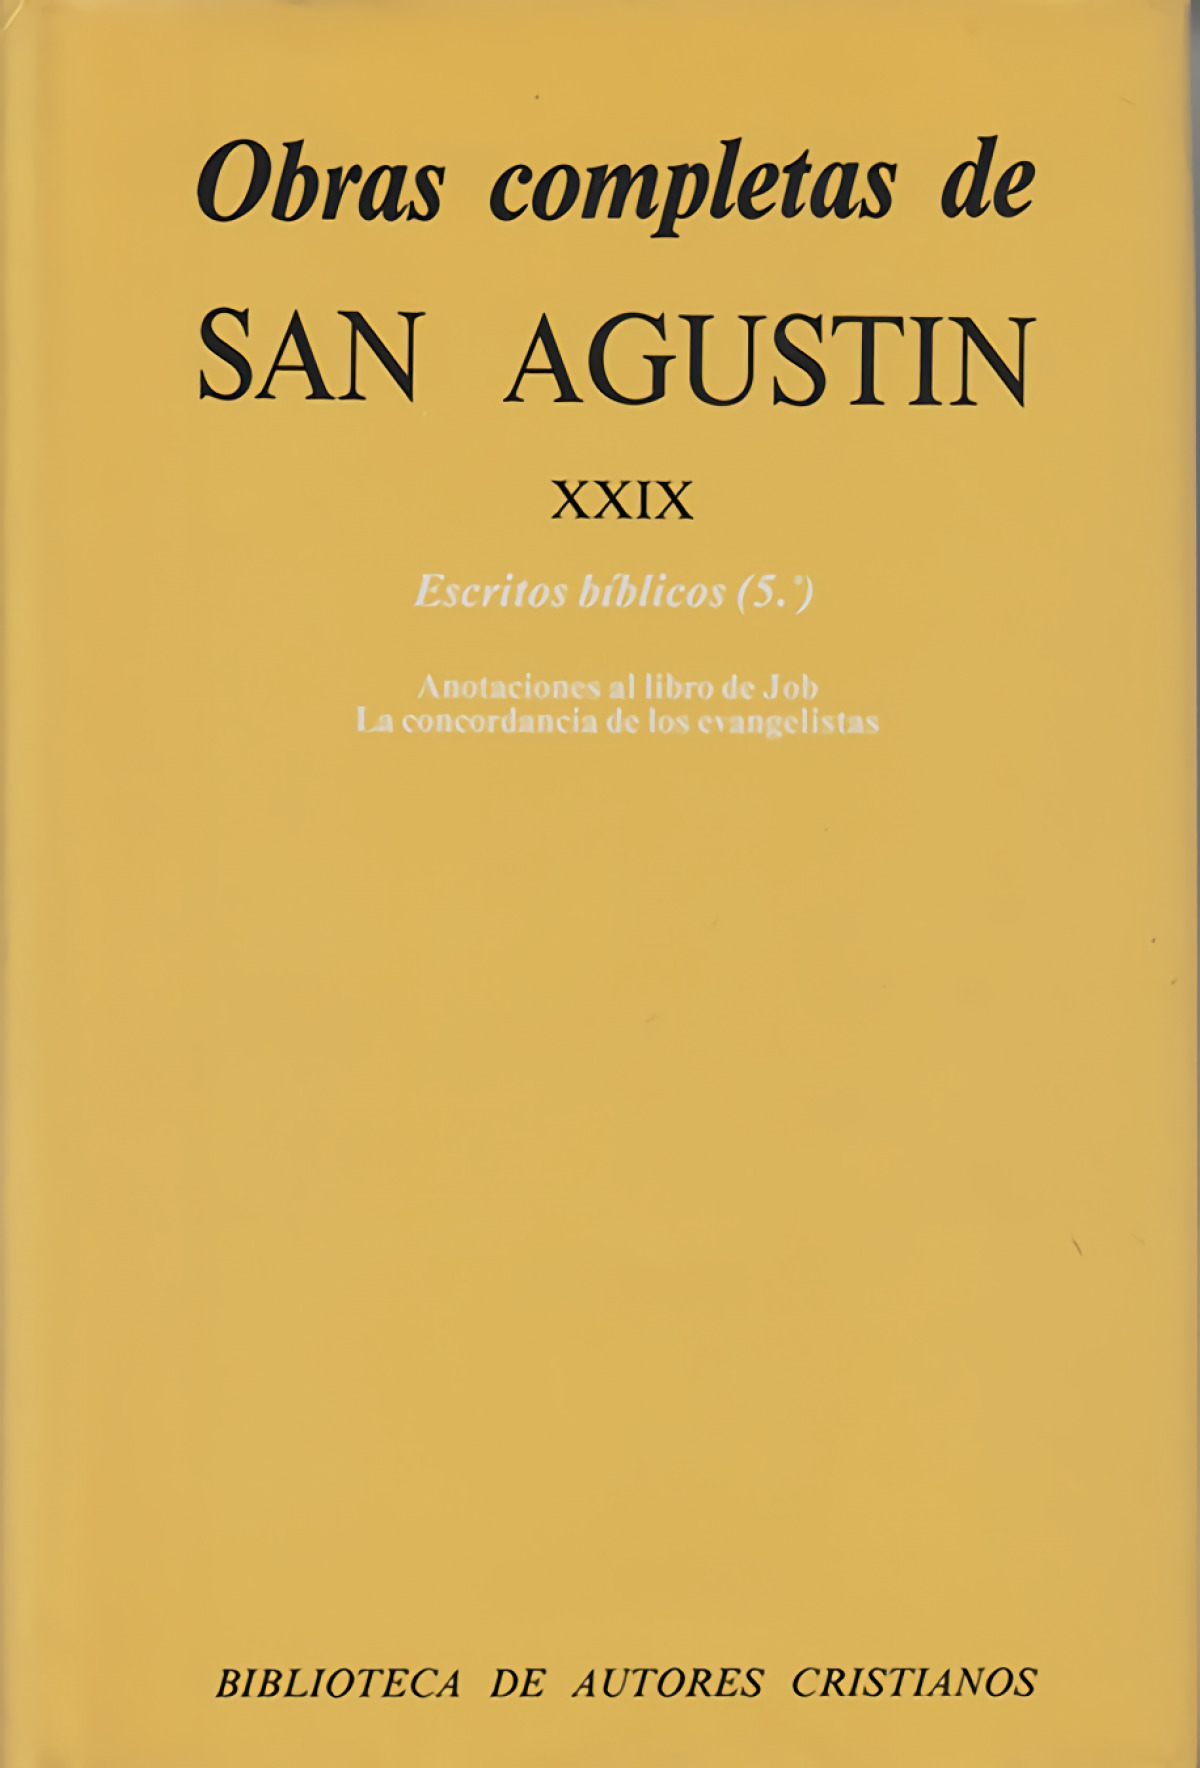 Obras completas de San Agustín.XXIX: Escritos bíblicos (5.º): Anotacio - San Agustín